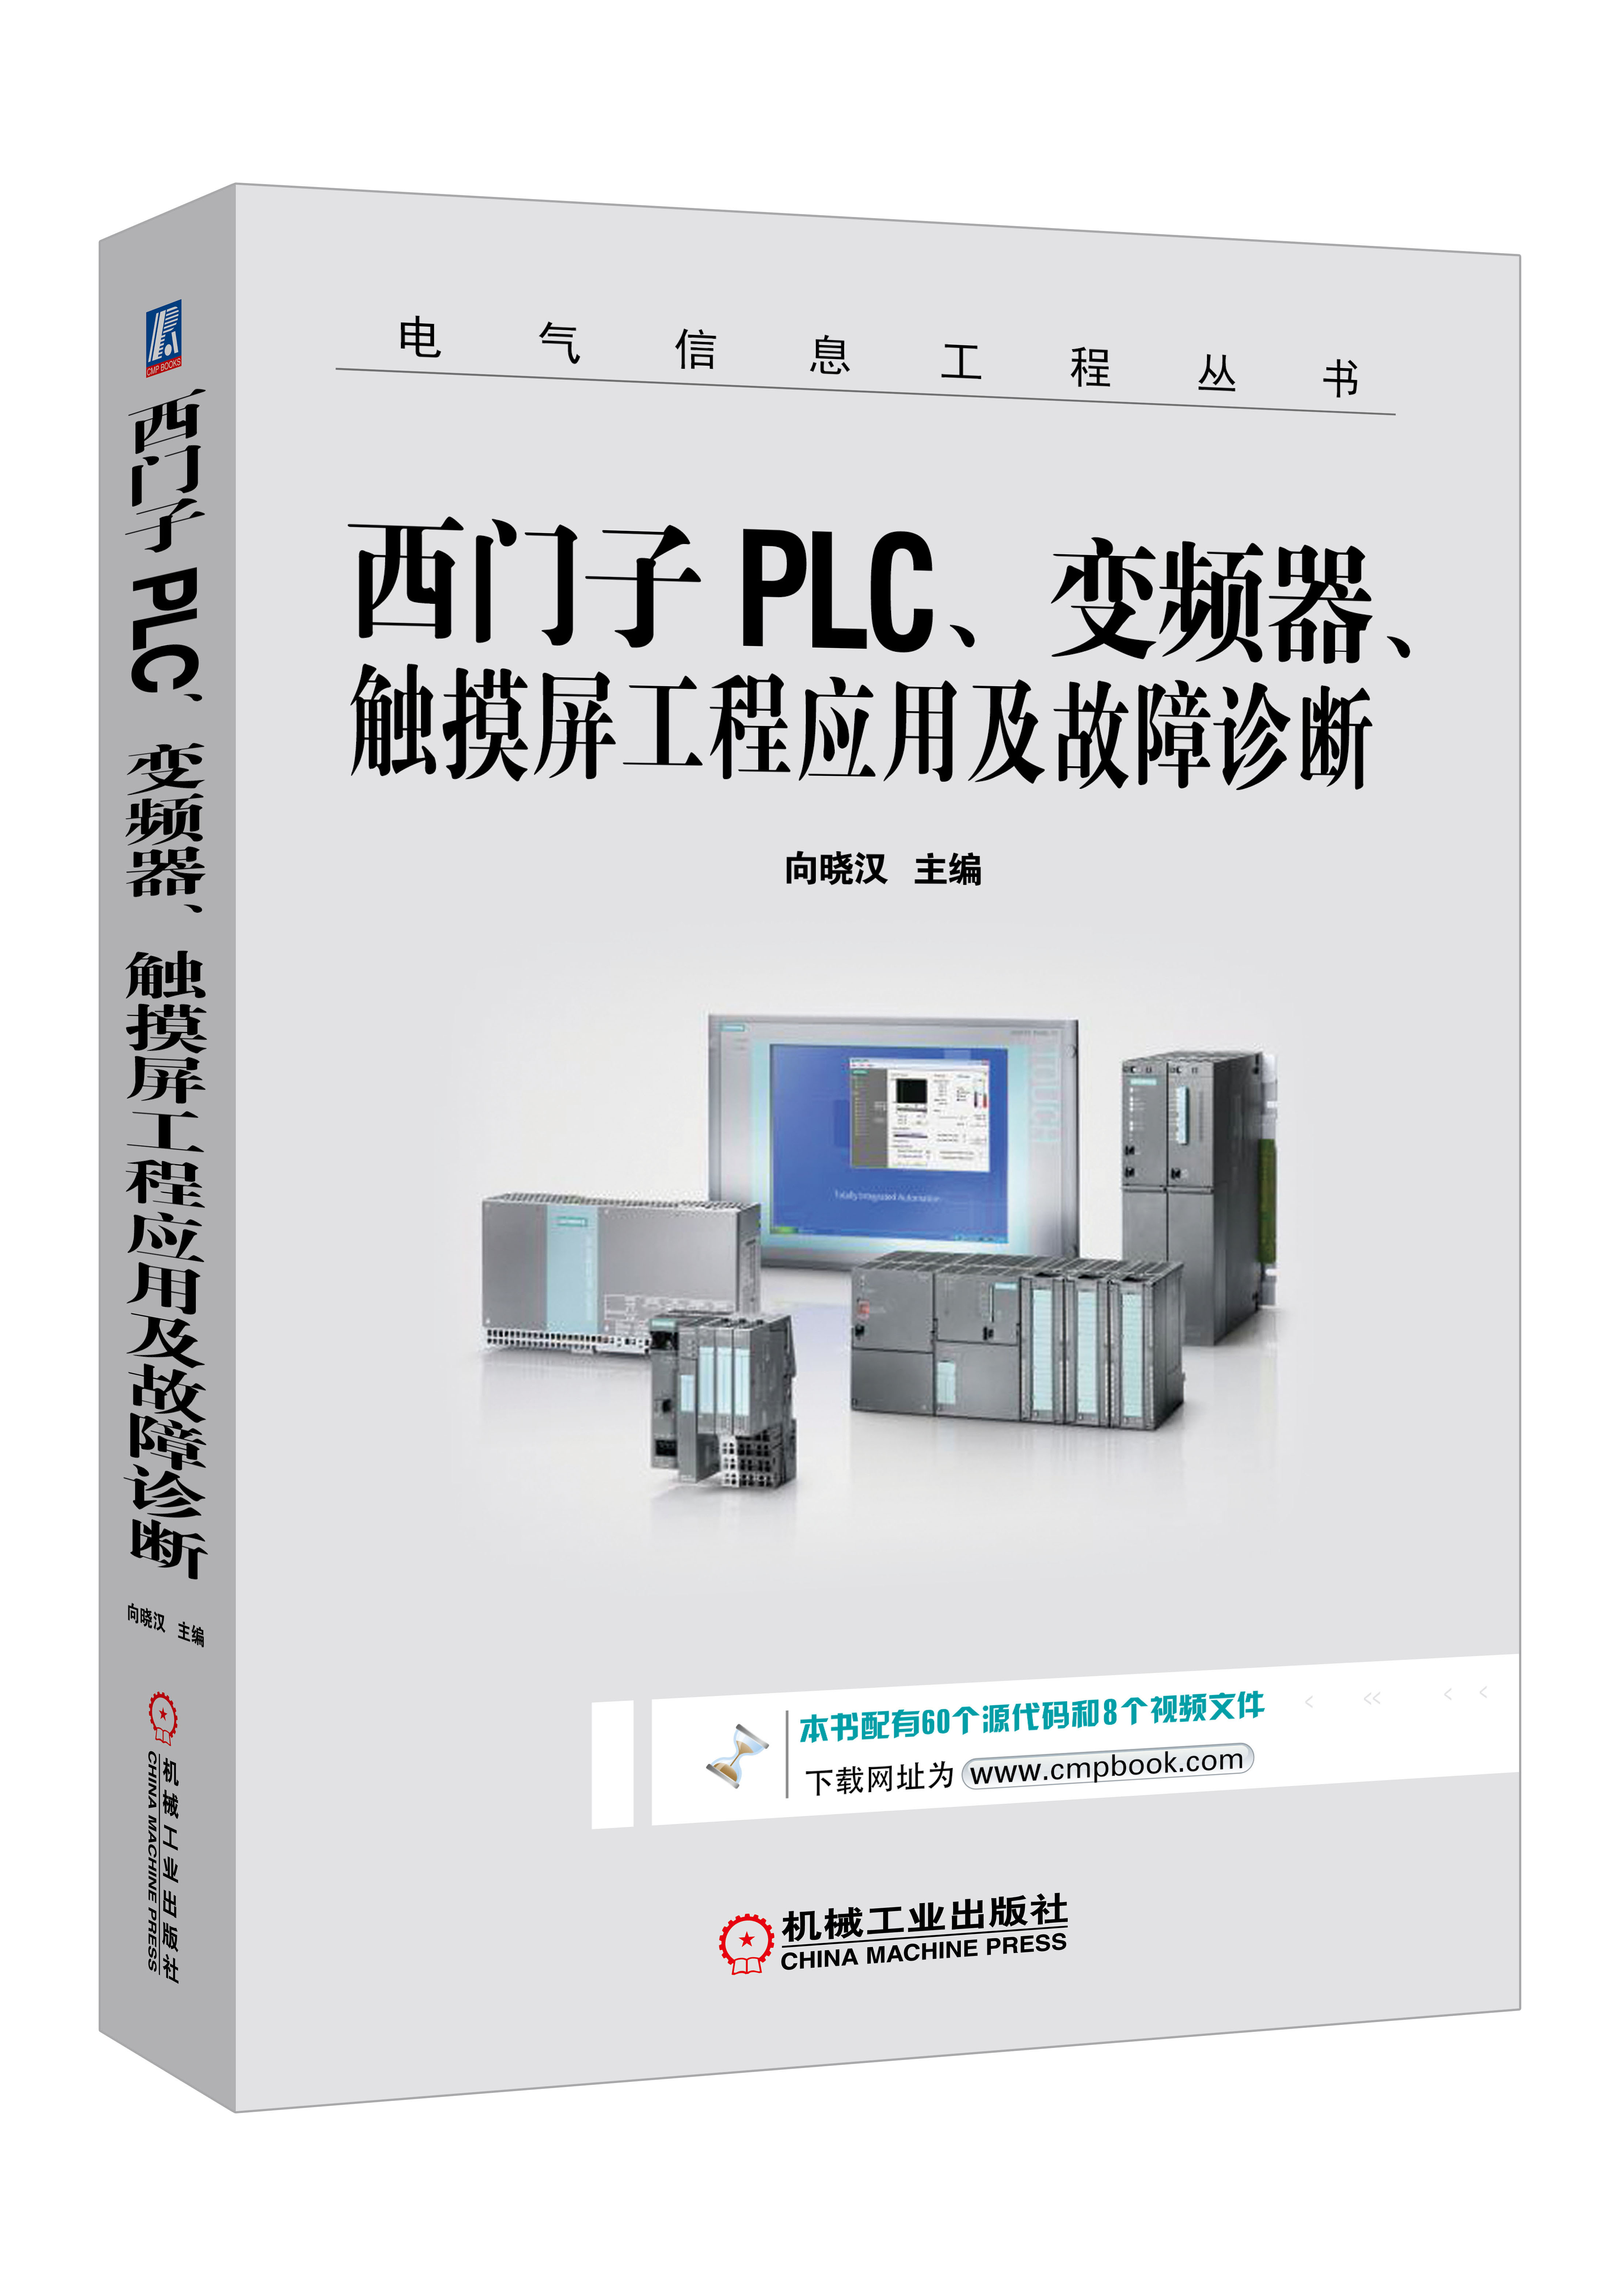 向晓汉:西门子PLC、变频器、触摸屏工程应用及故障诊断